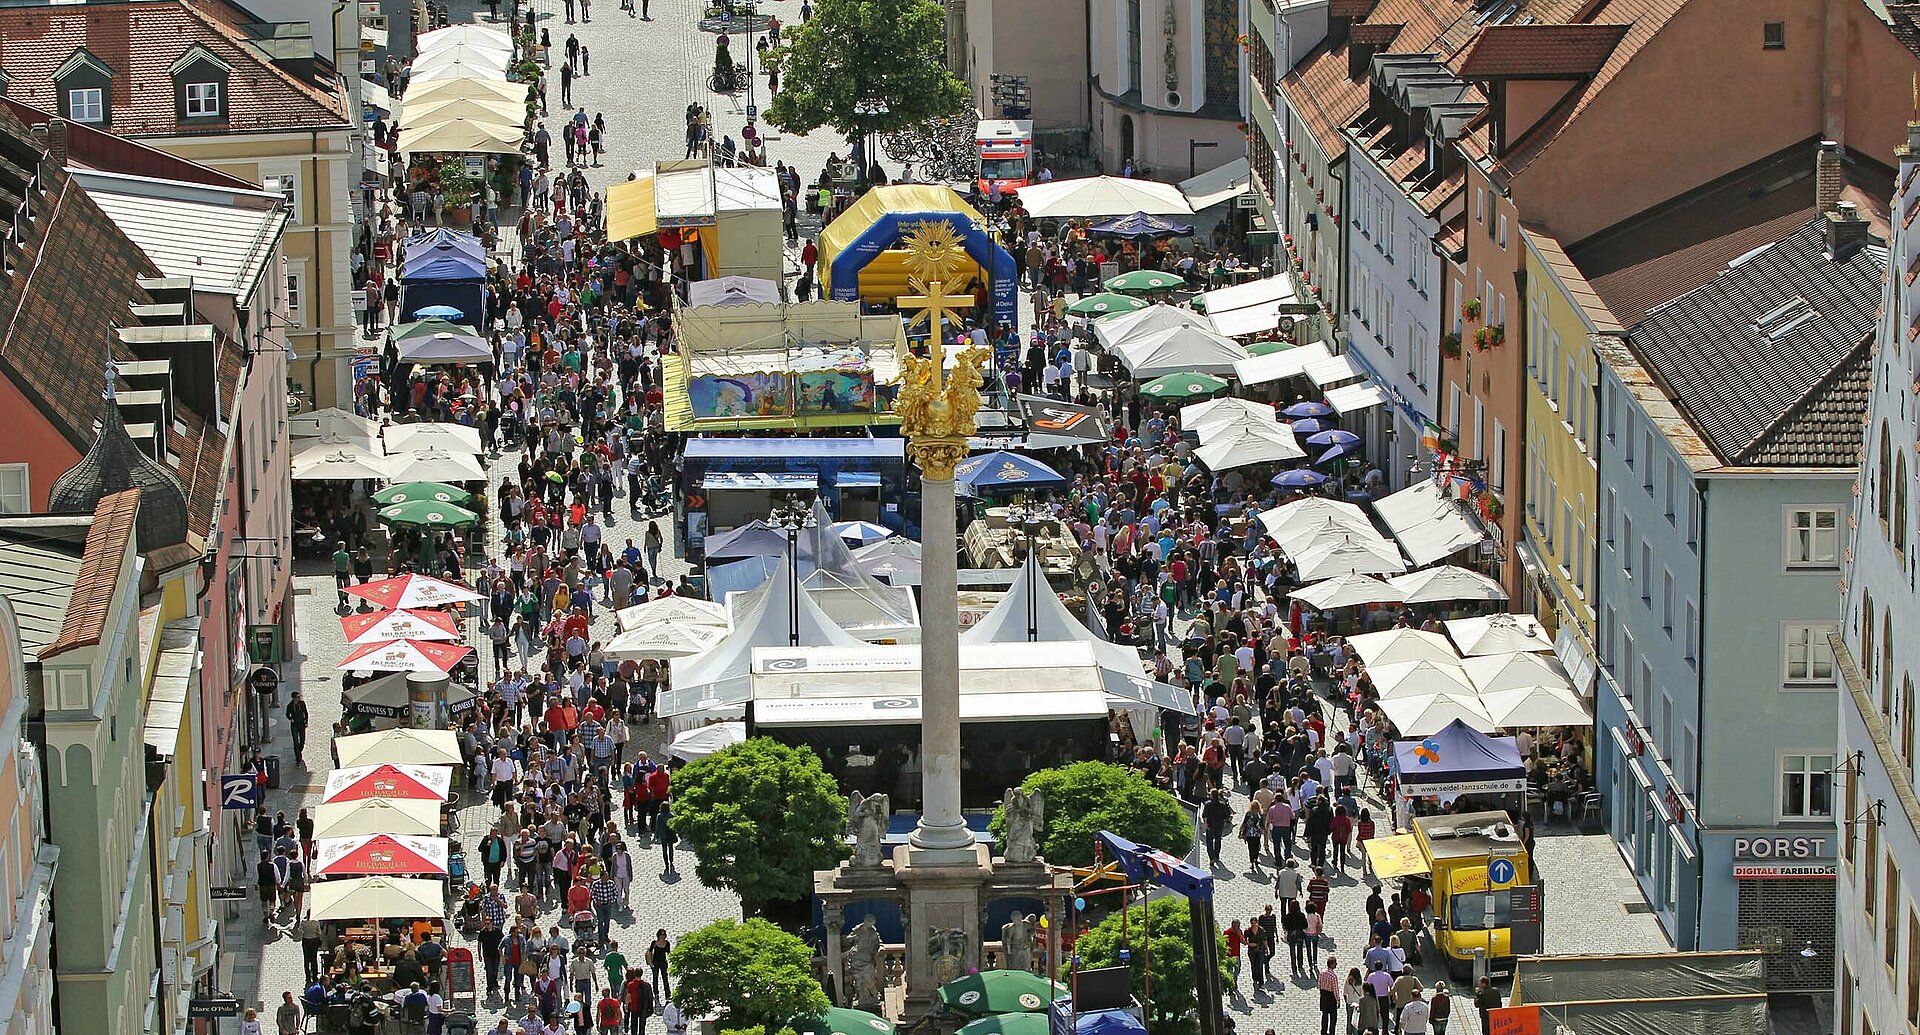 Viele Menschen besuchen ein Fest auf dem Straubinger Stadtplatz. Die Sitzplätze werden durch Sonnenschirme angenehm beschattet.